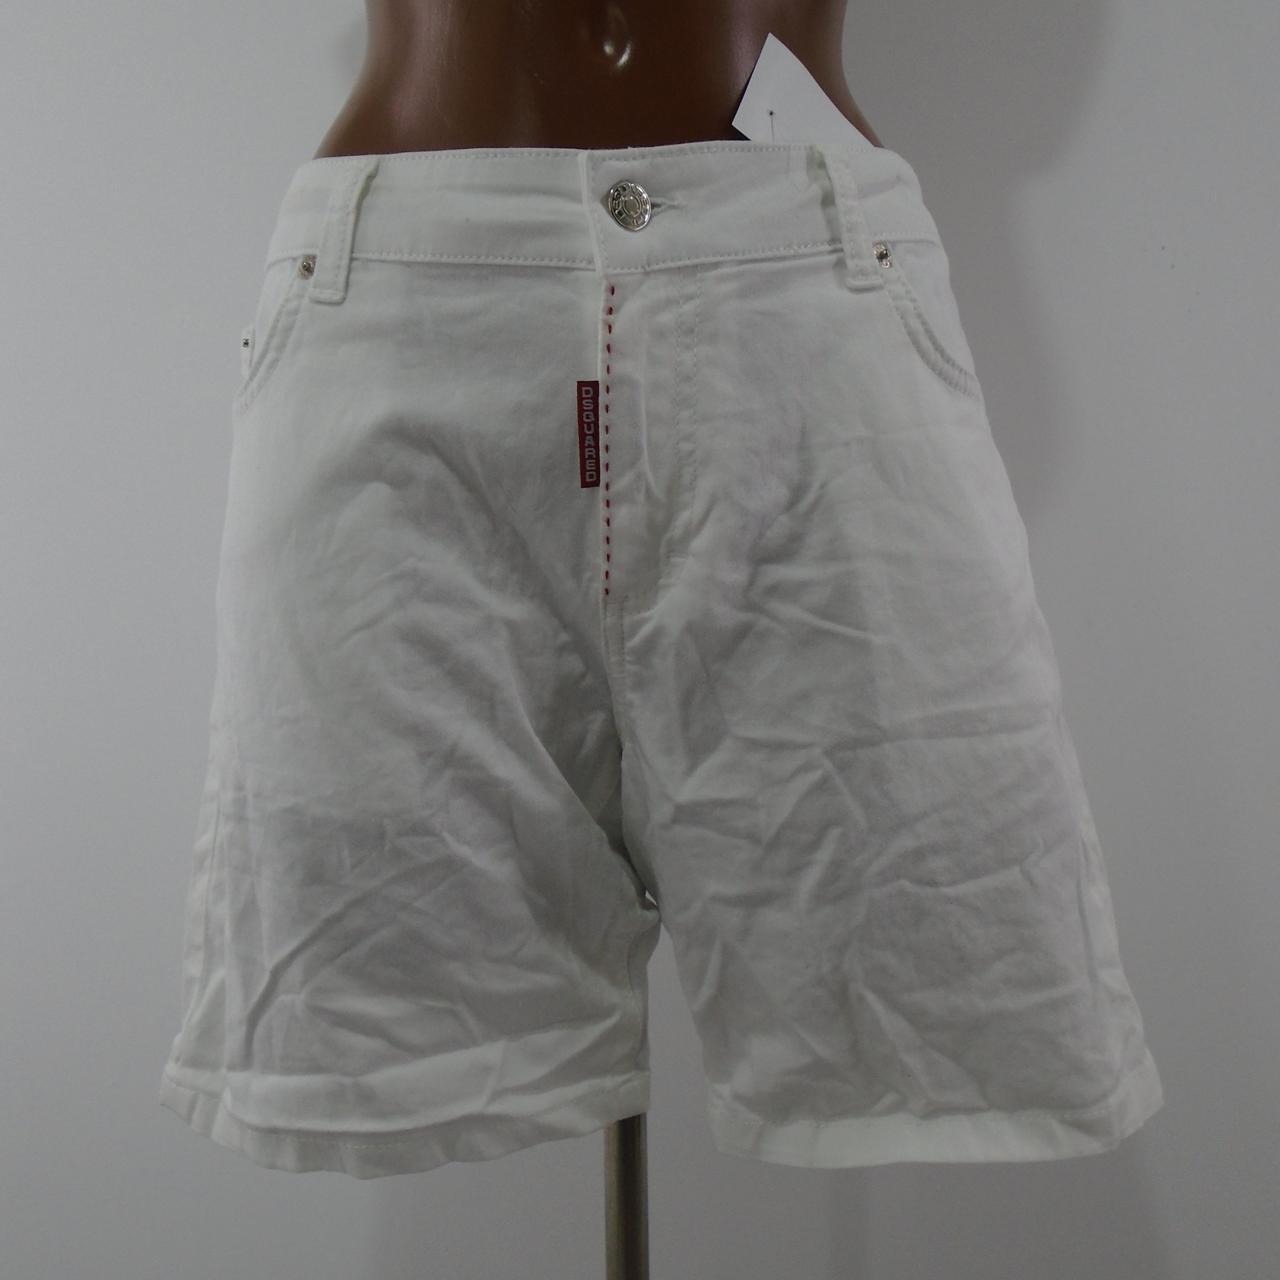 Pantalones cortos de mujer Dsquared2. Blanco. M. Usado. Bien